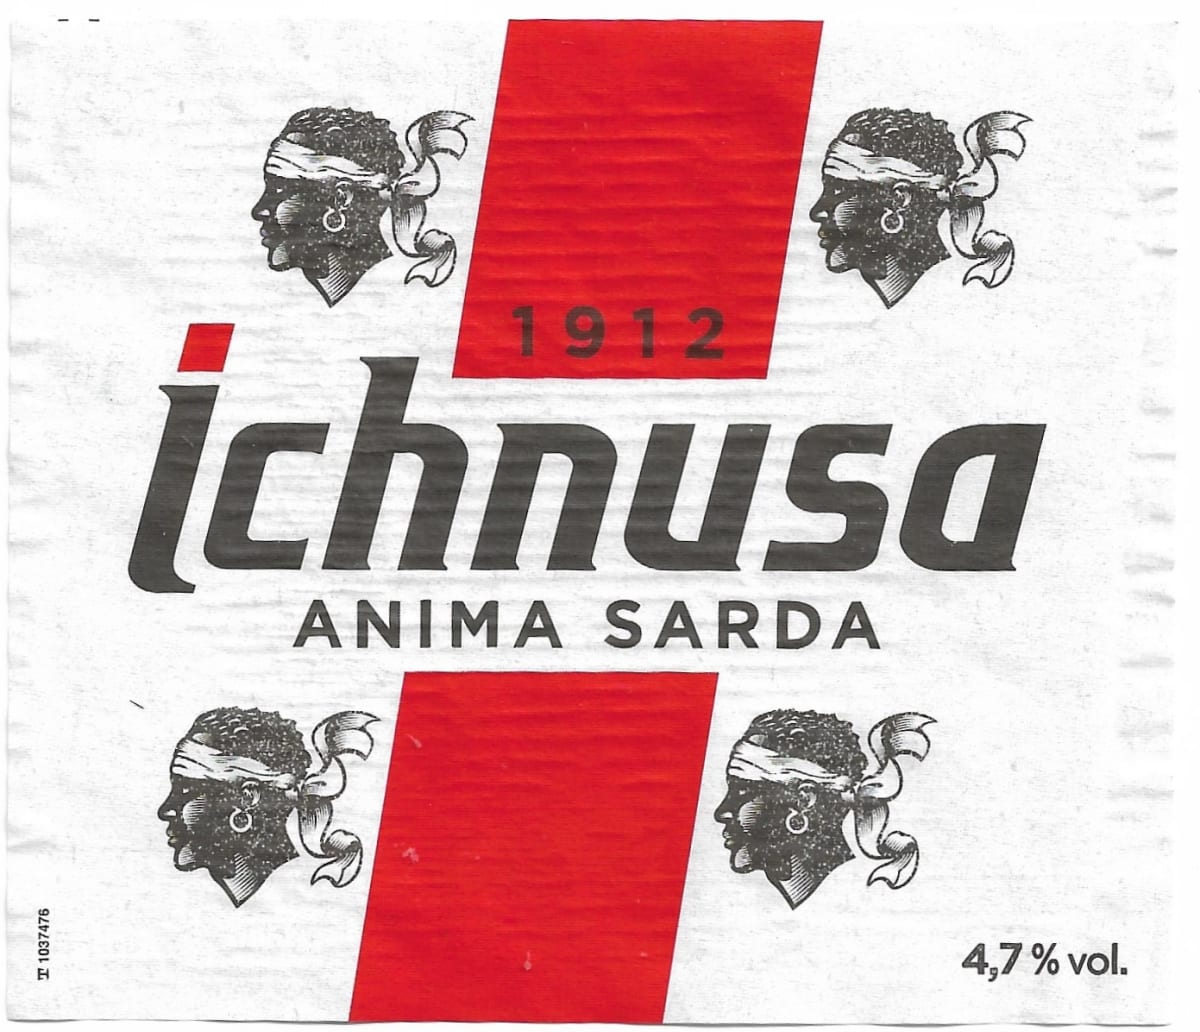 Ichnusa Anima Sarda 1912